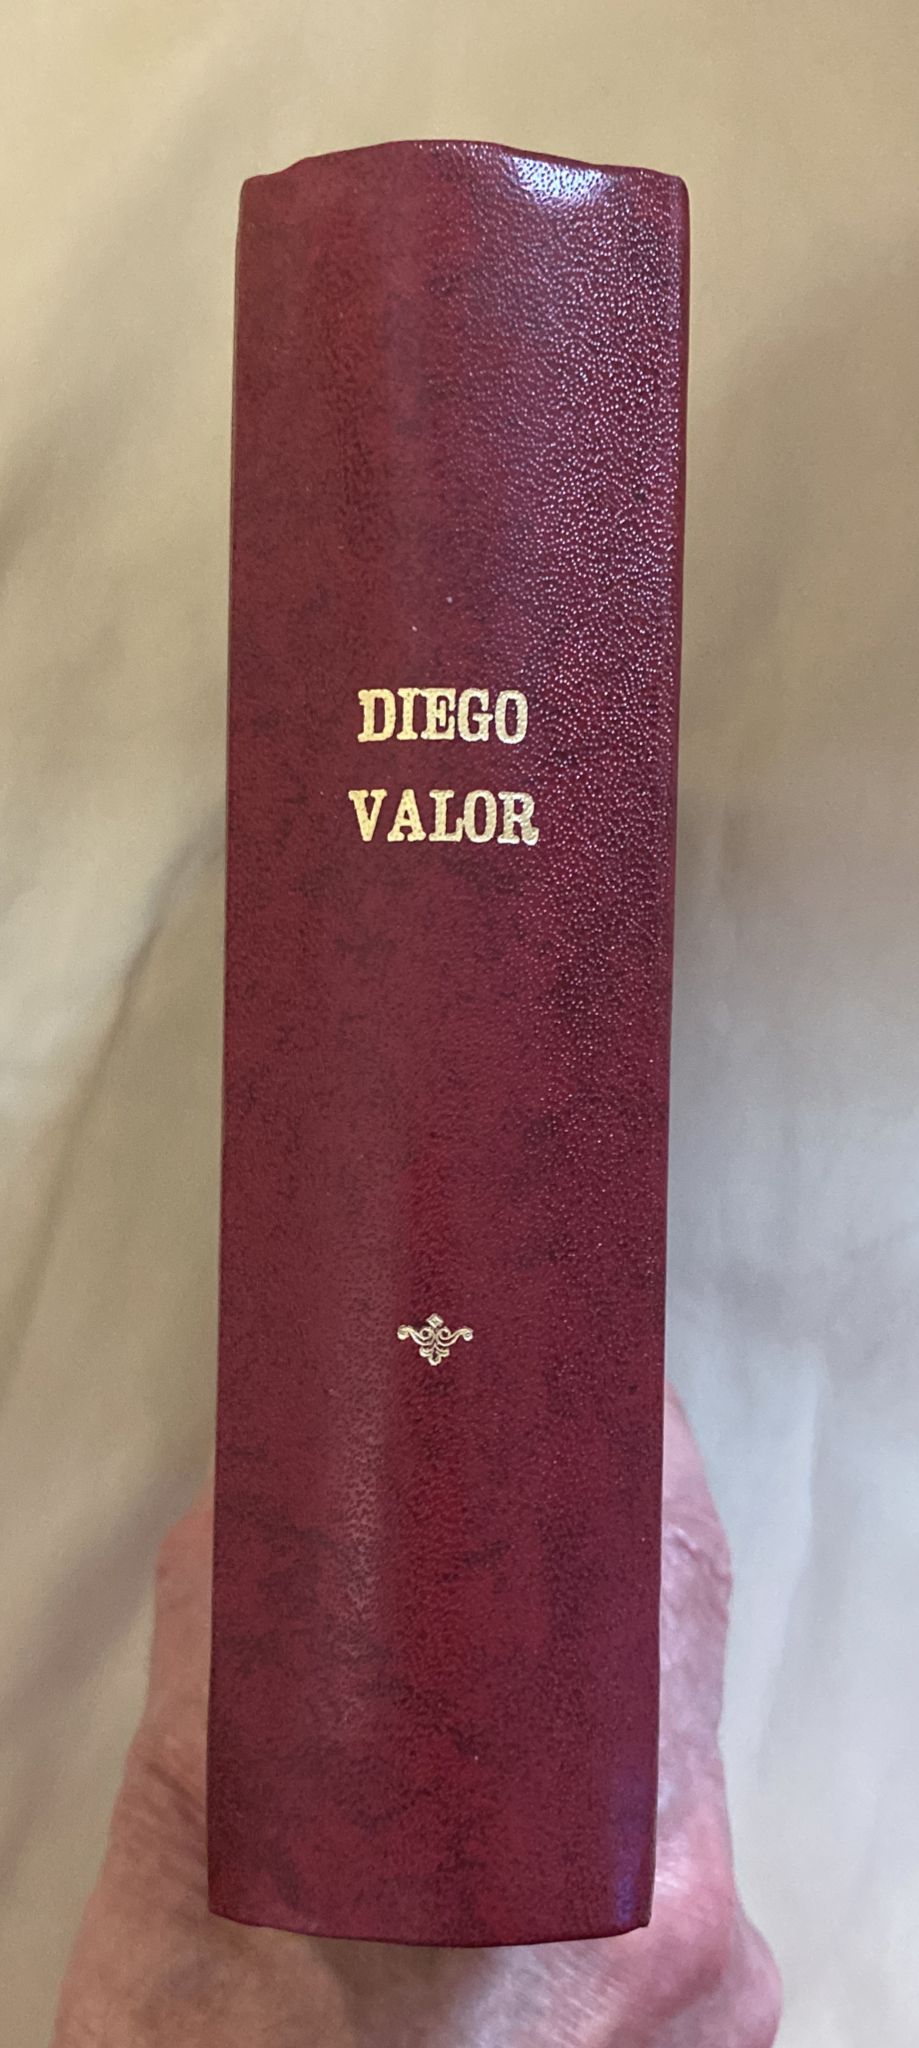 Diego Valor 2ª. Cid 1956. Colección Completa, 44 ejemplares encuadernada en un tomo